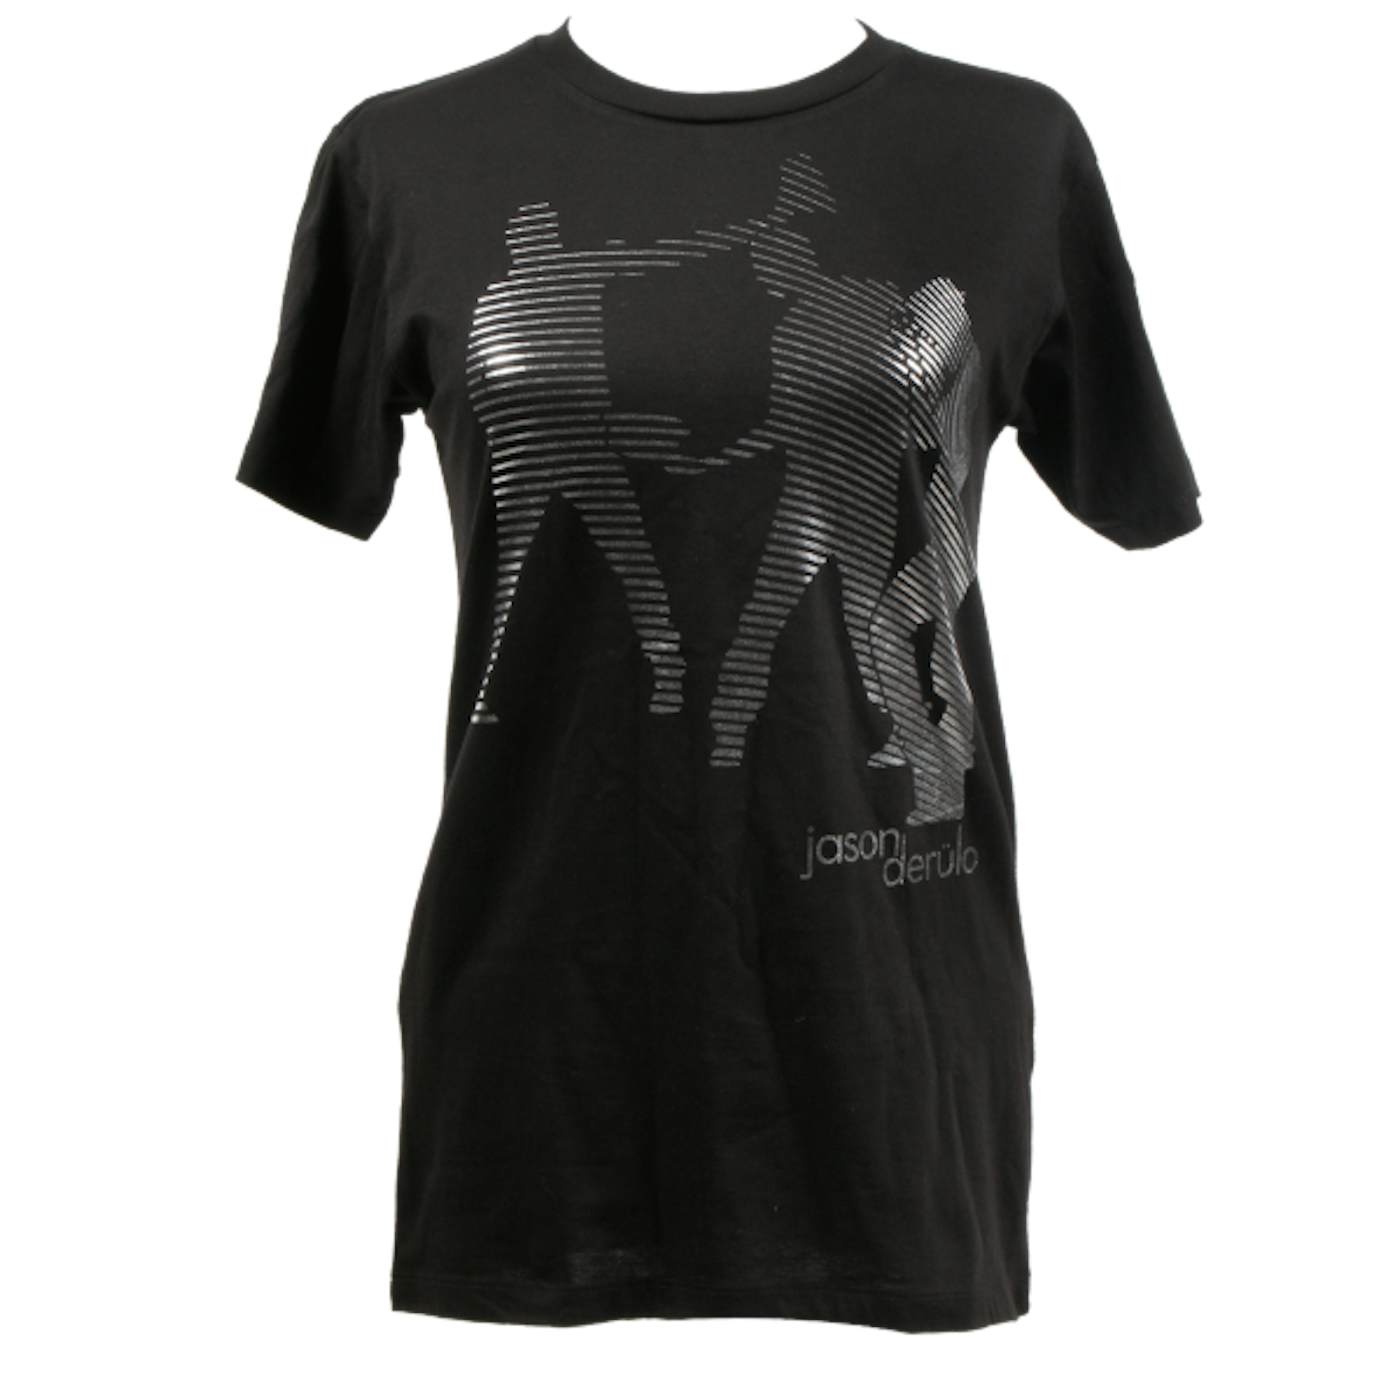 Jason Derulo Remission T-shirt